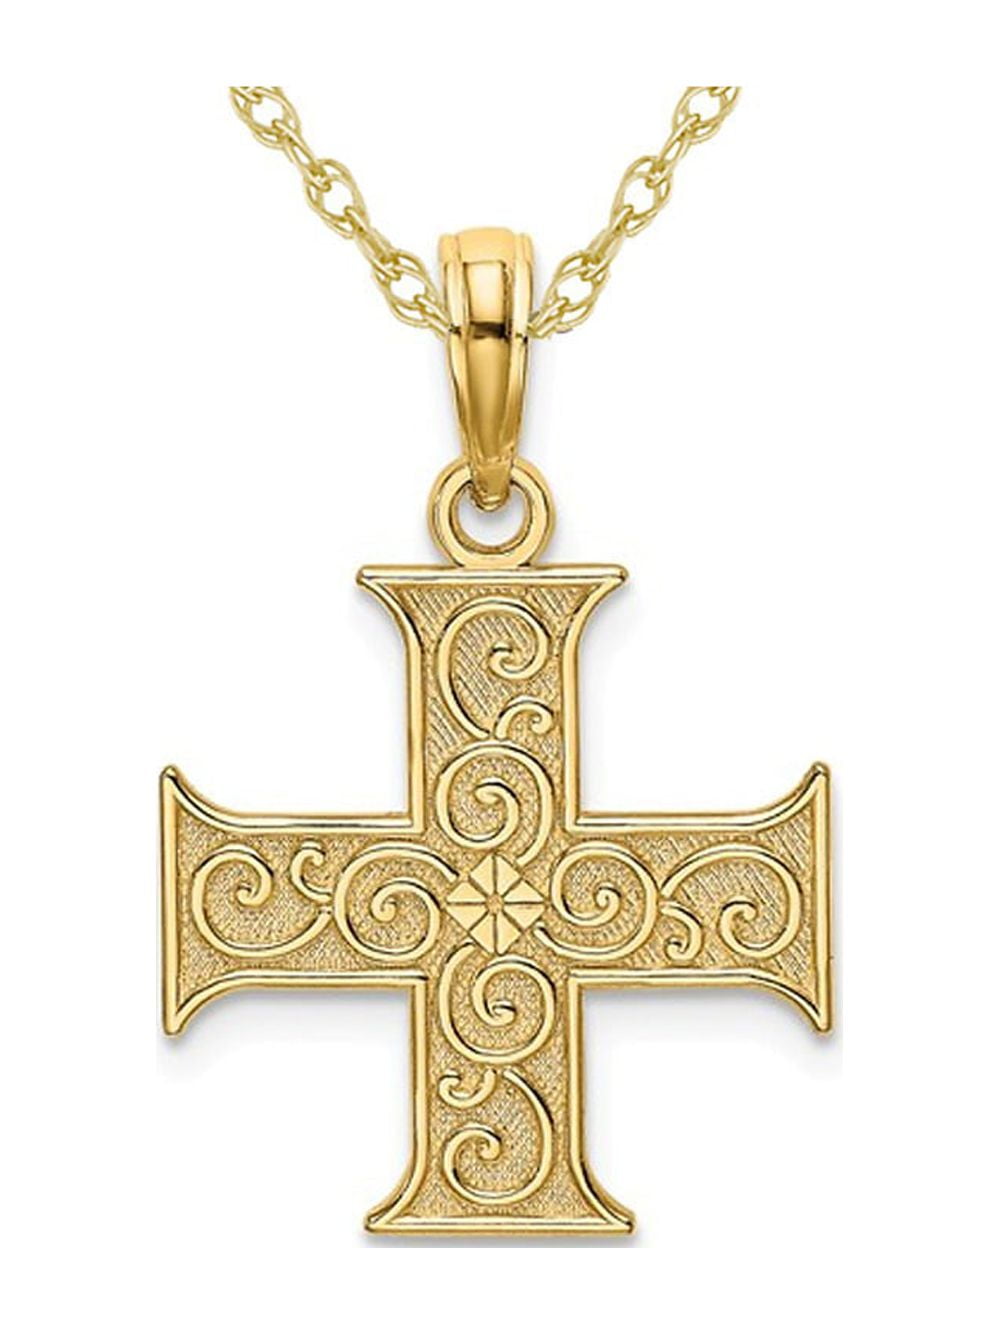 Greek Cross Jewelry — Athena Gaia